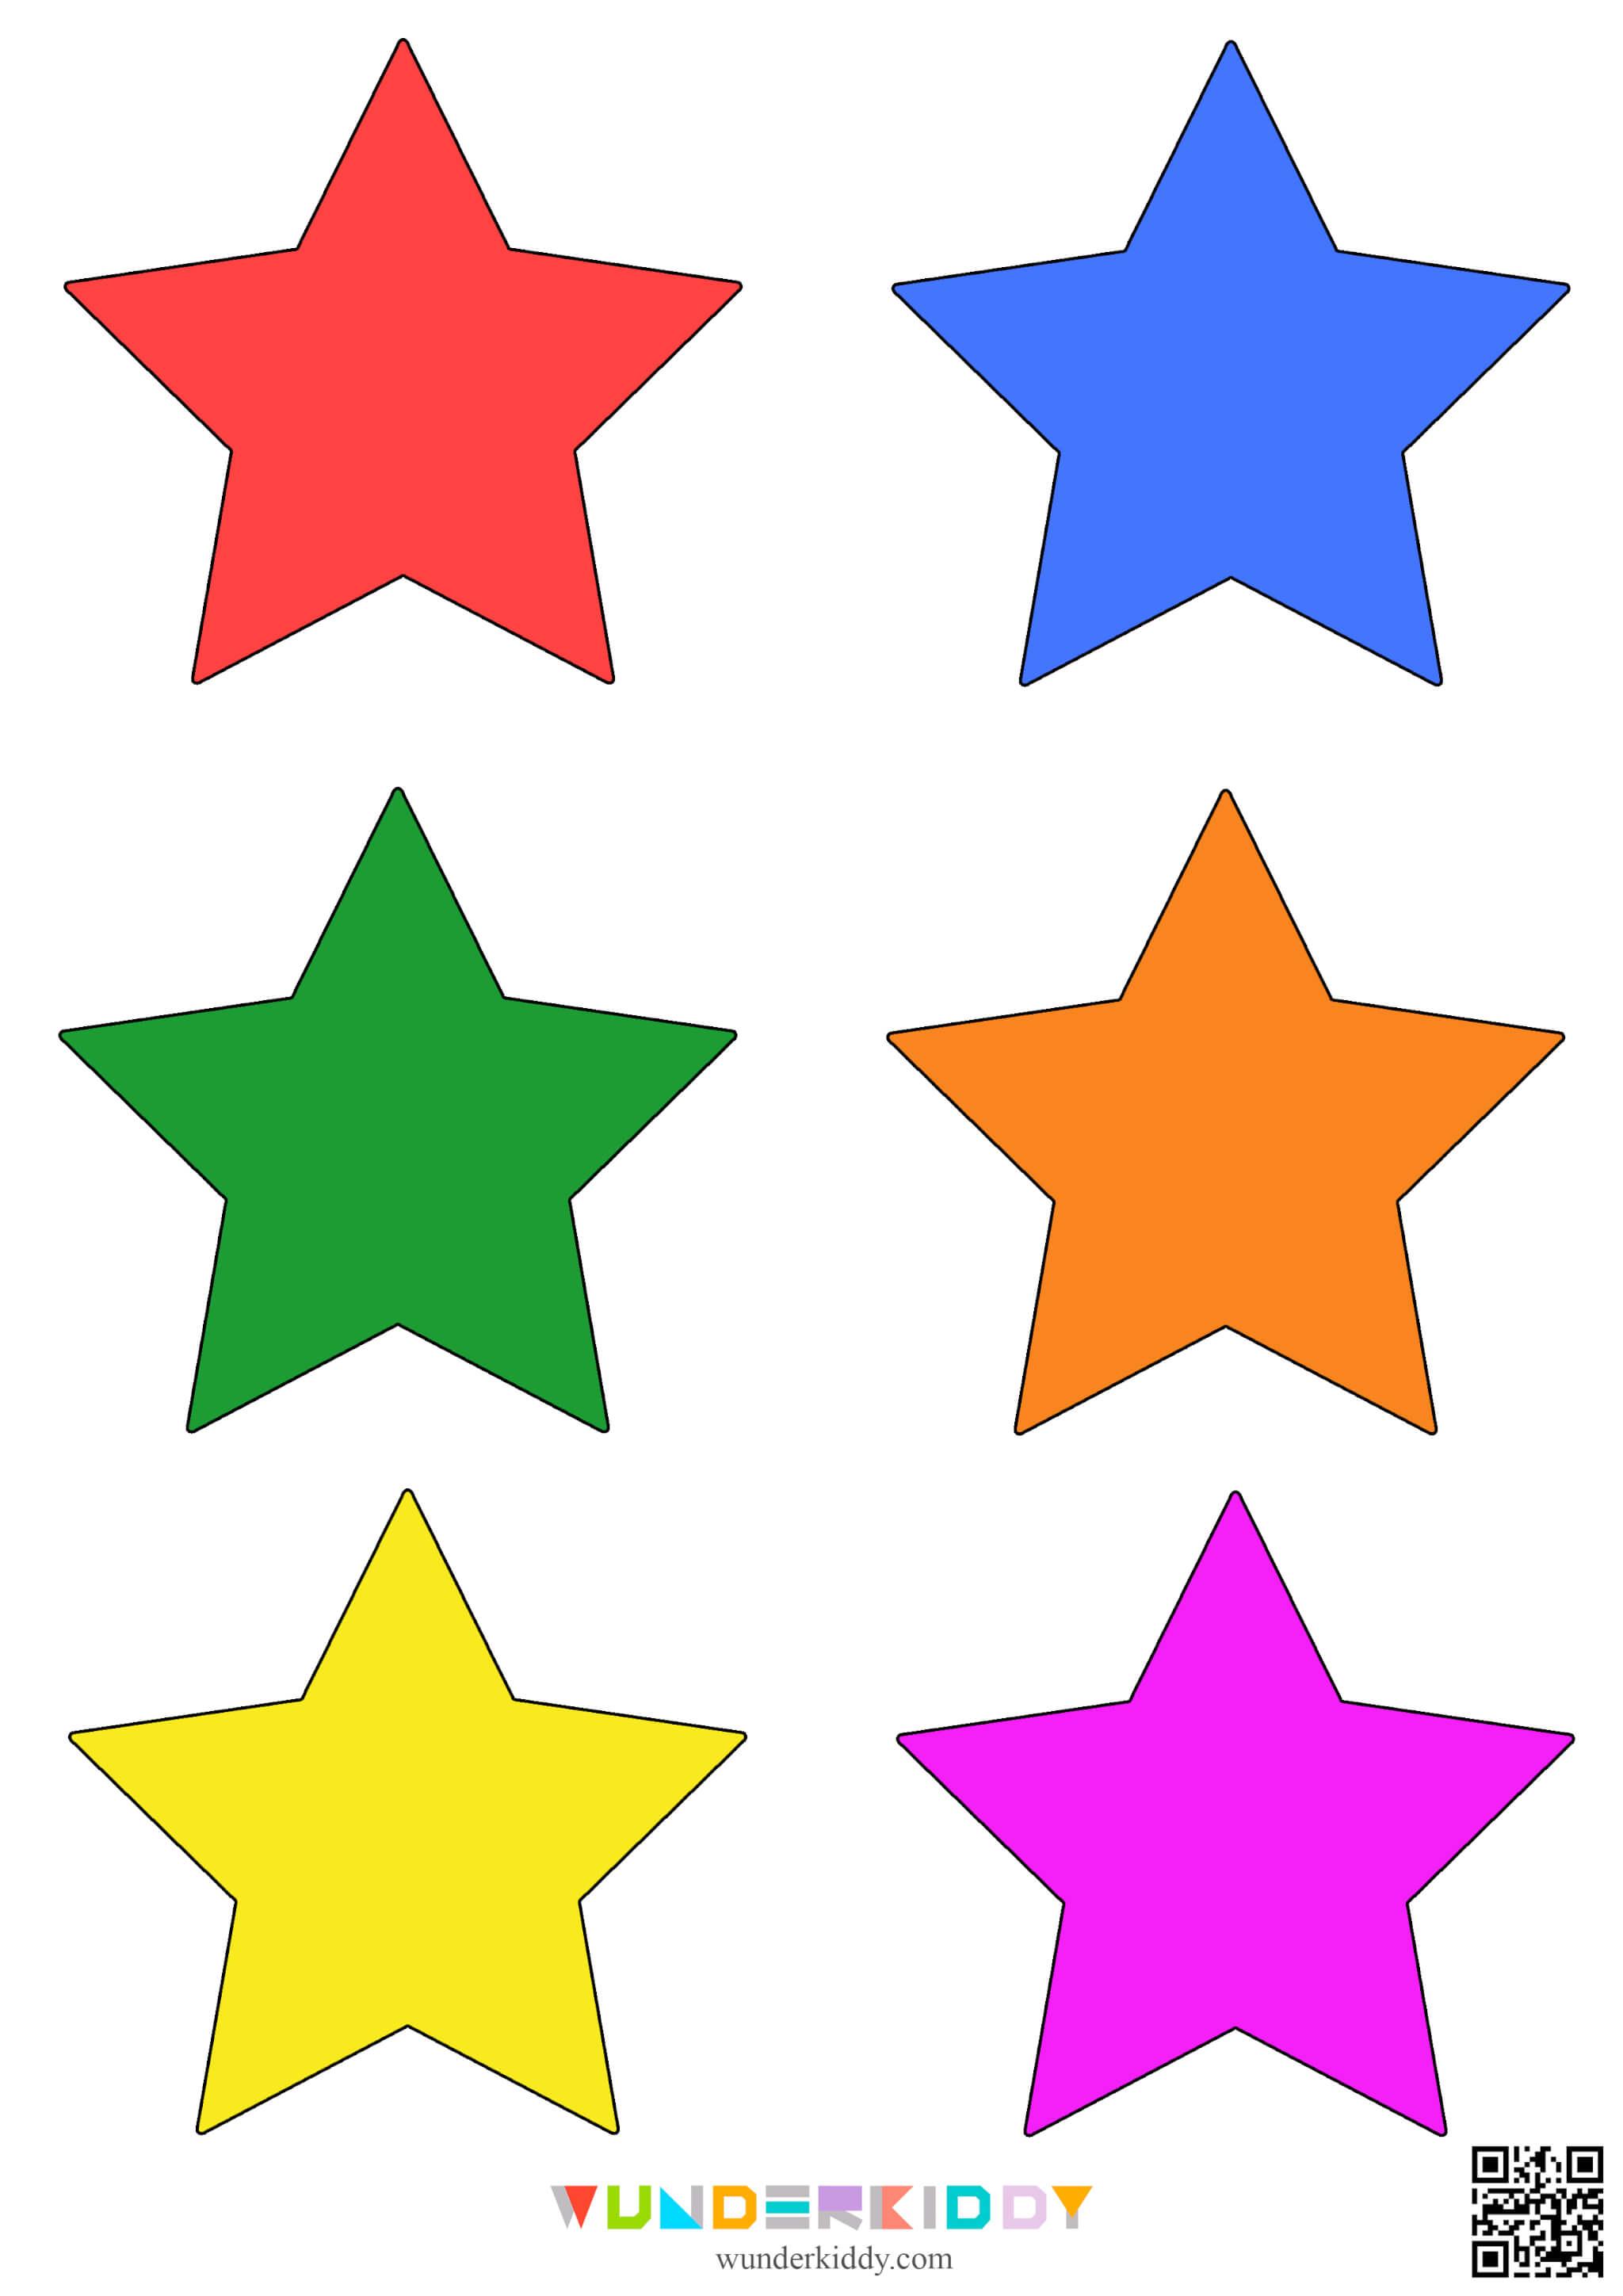 Printable Star Template - Image 4